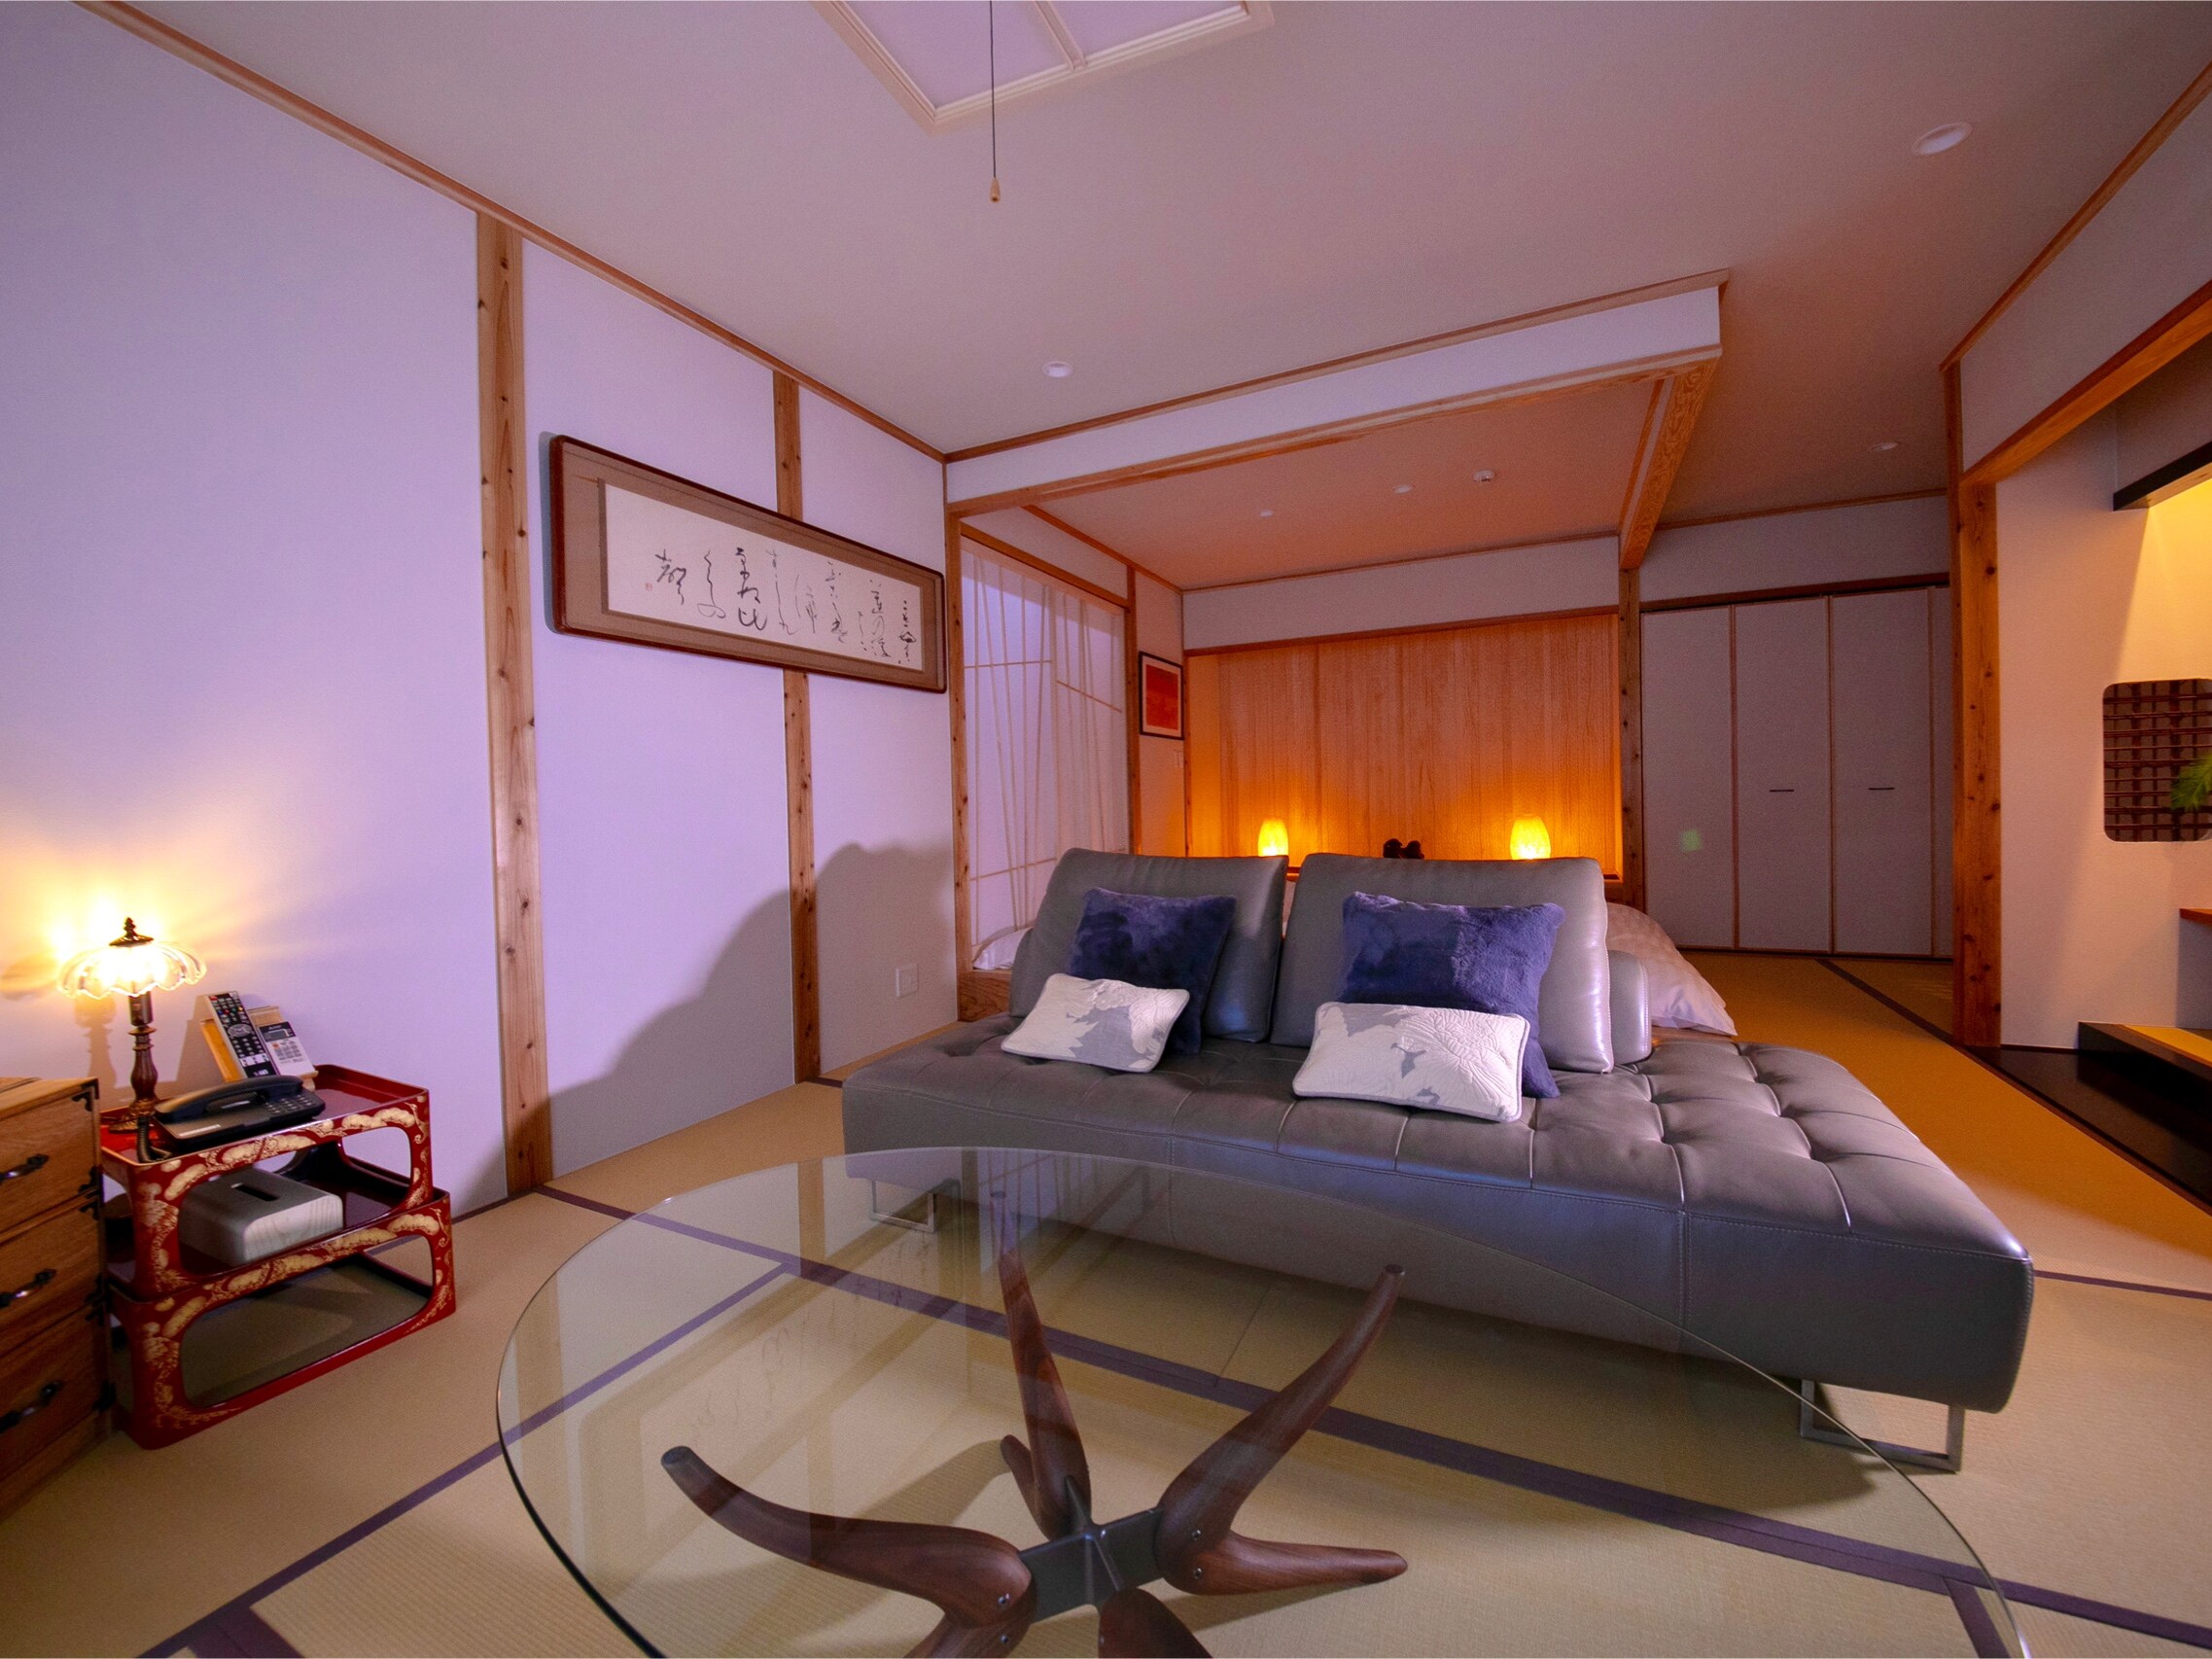 ■주석 -suzu- ■노천이 있는 멀리 객실/원랭크상의 특별한 하루를 즐겨 주십시오.